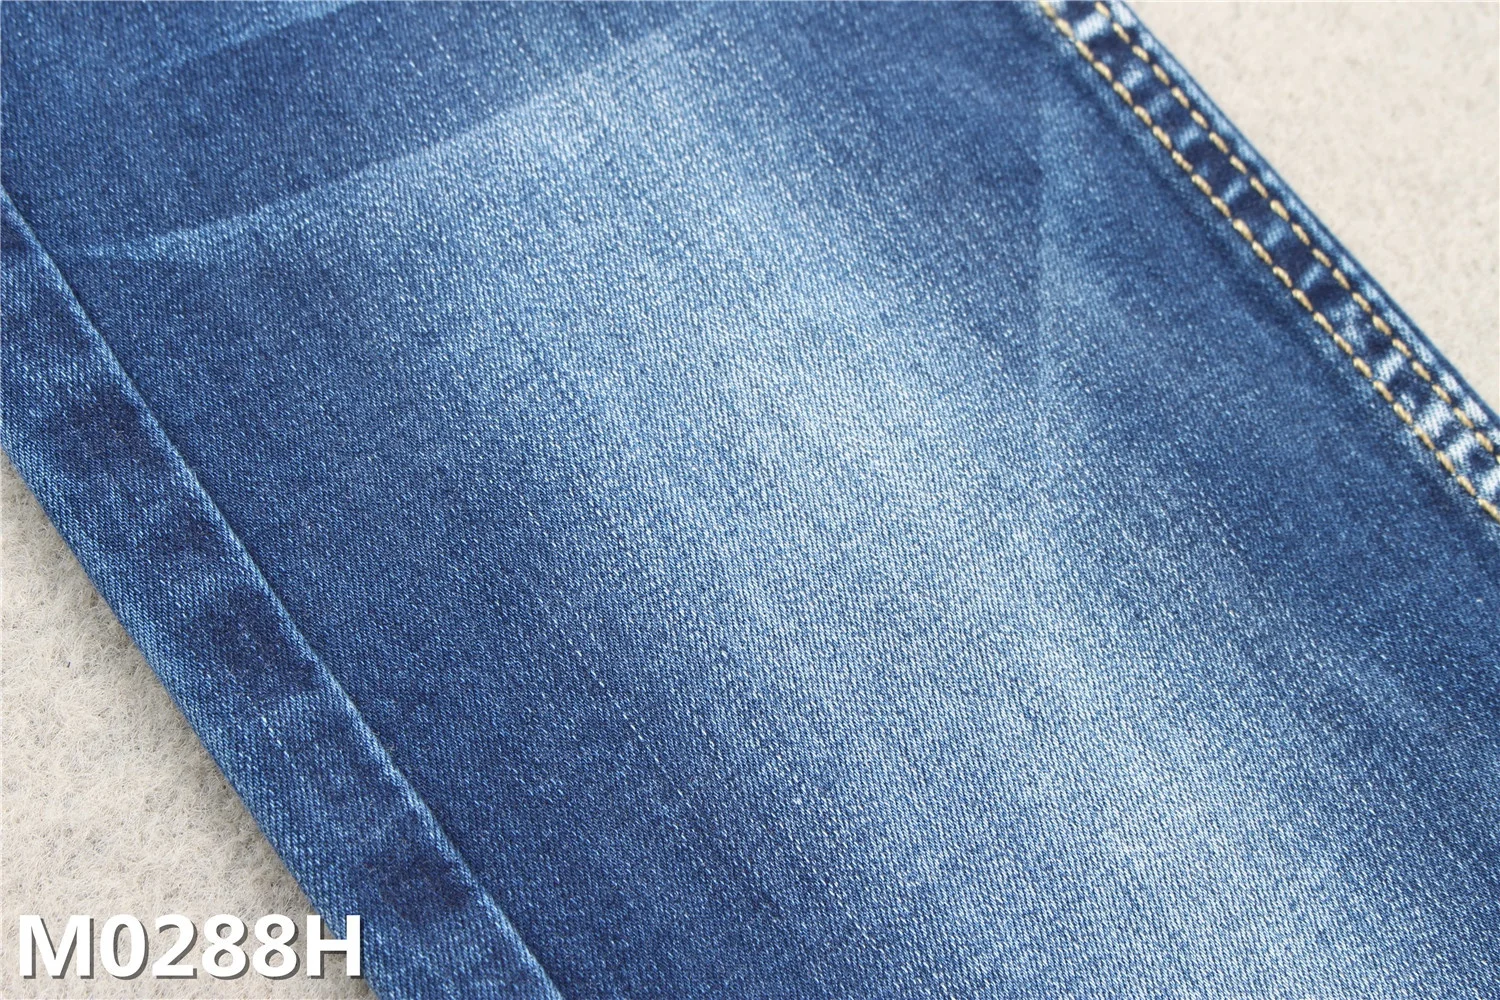 9.3 Oz Indigo Blue Cotton Bamboo Viscose Denim Fabric for Jeans - China  Bamboo Viscose Denim Fabric and Bamboo Denim Fabric price | Made-in-China .com